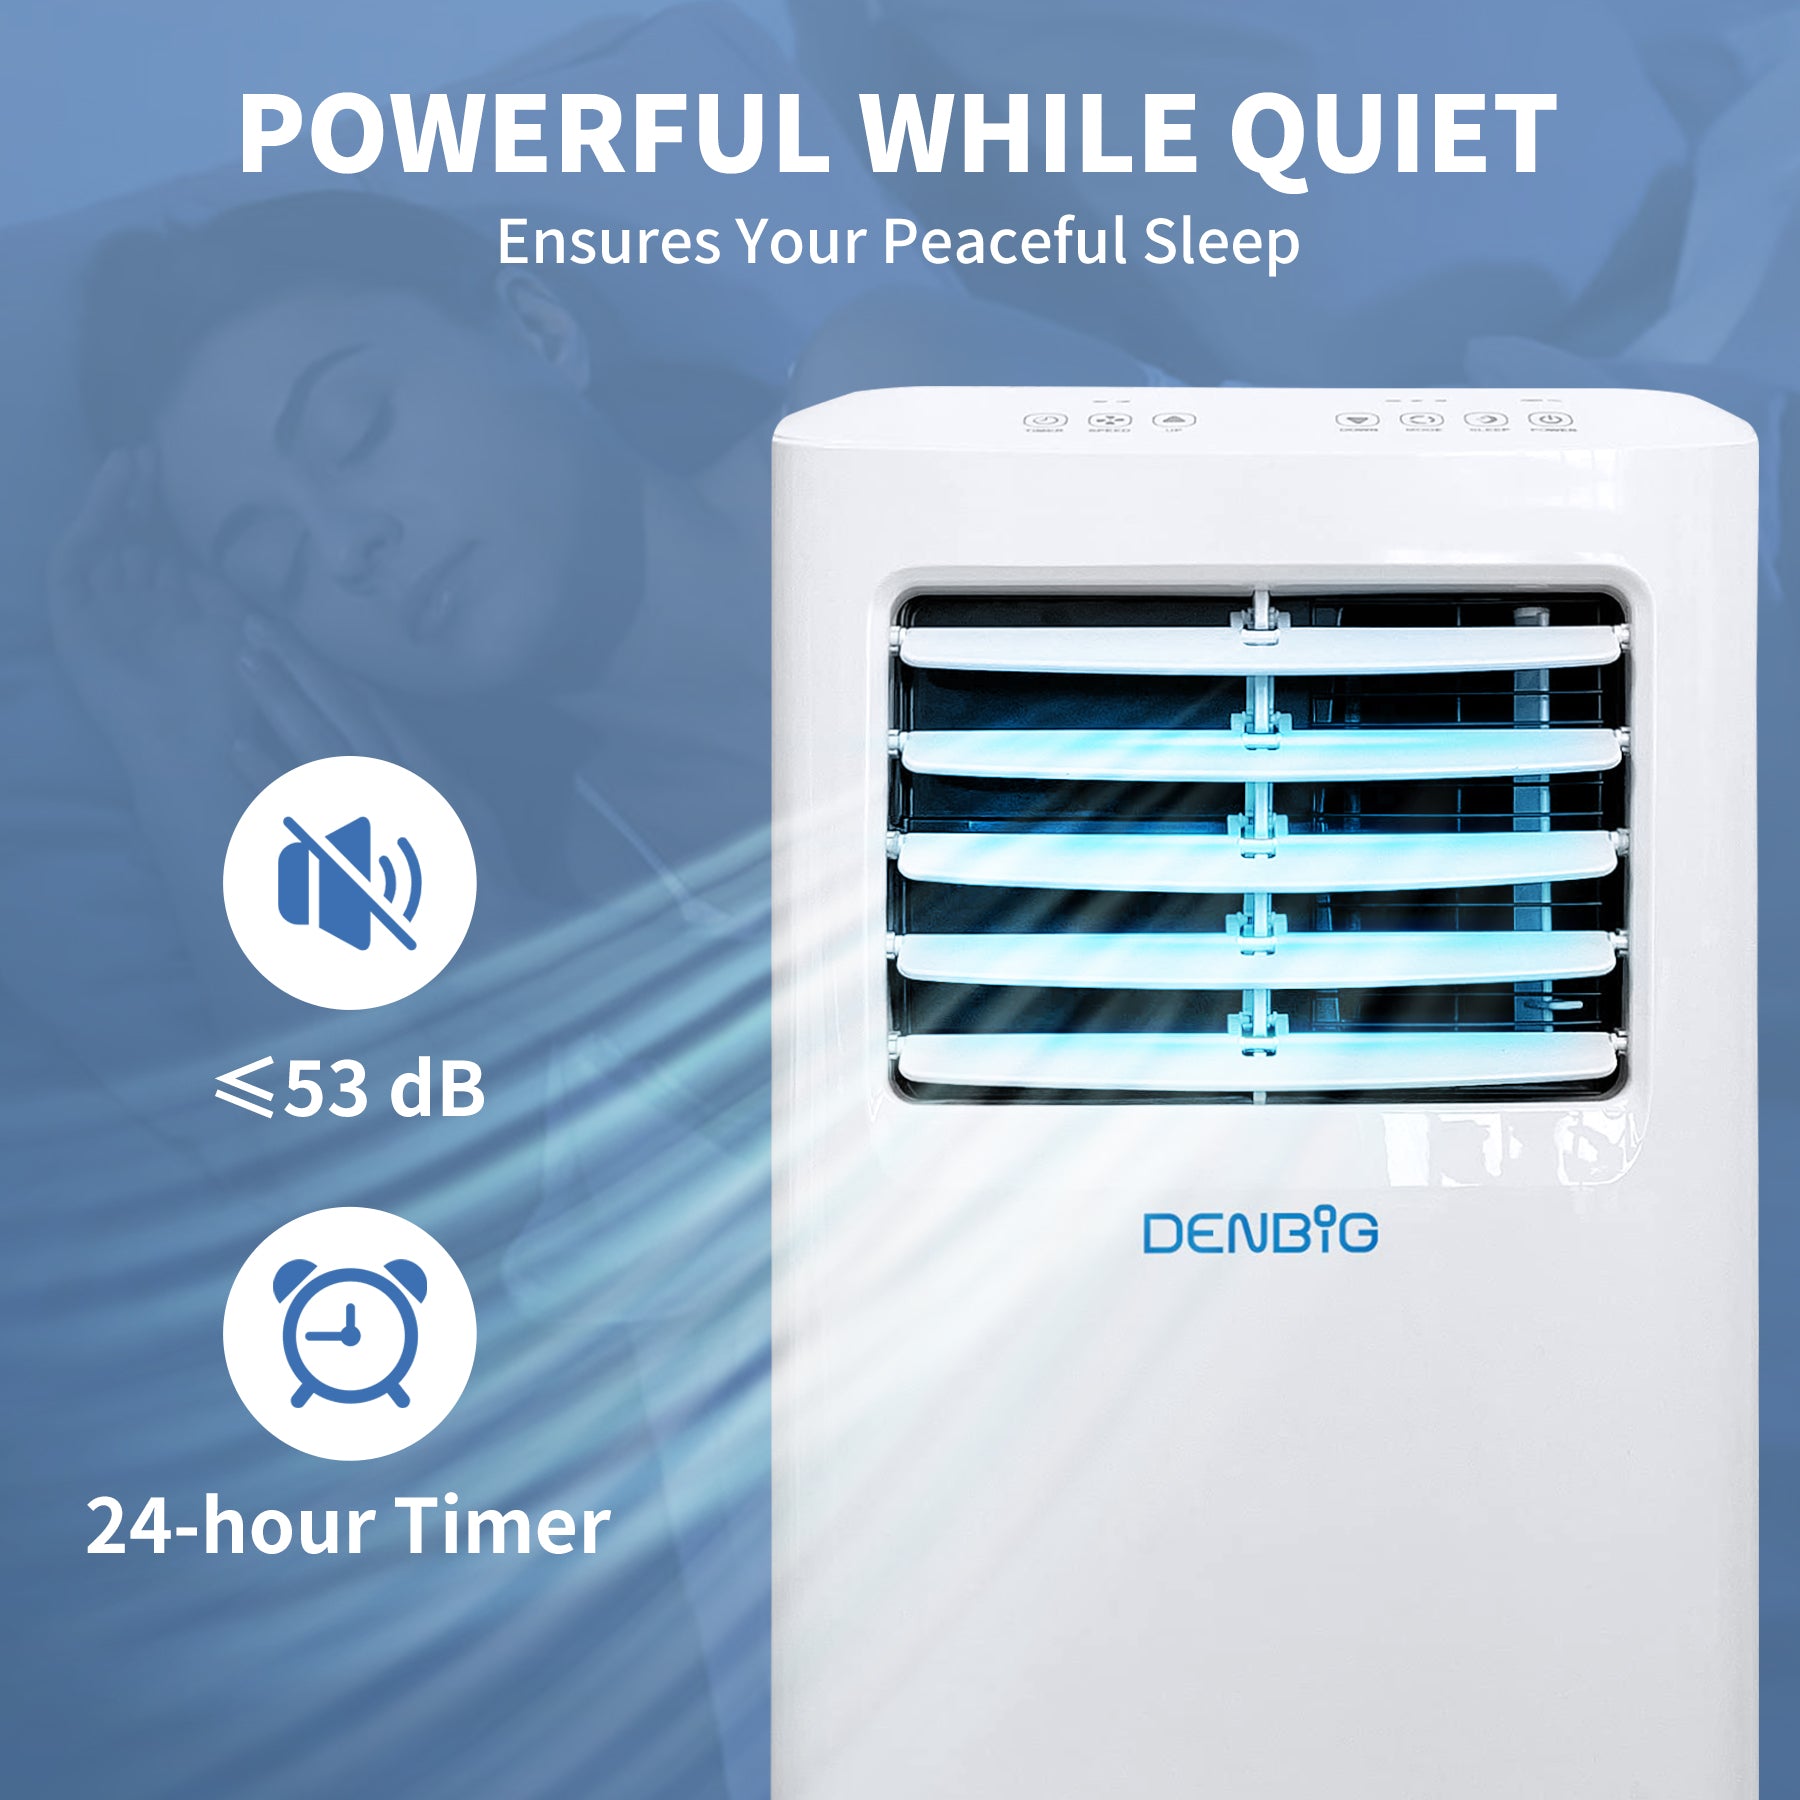 7,000 BTU Portable Air Conditioner | A019G-5KR